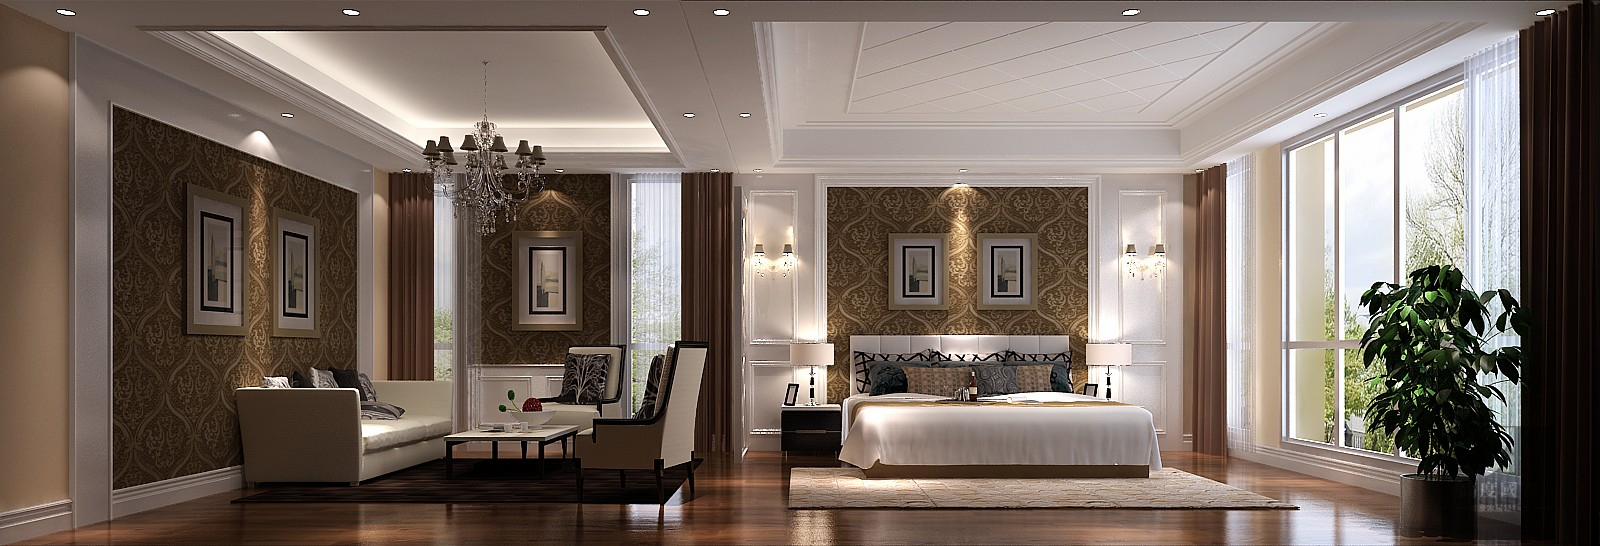 别墅 欧式 时尚 简洁 大方 卧室图片来自高度国际装饰韩冰在领秀新硅谷380平米简欧的分享